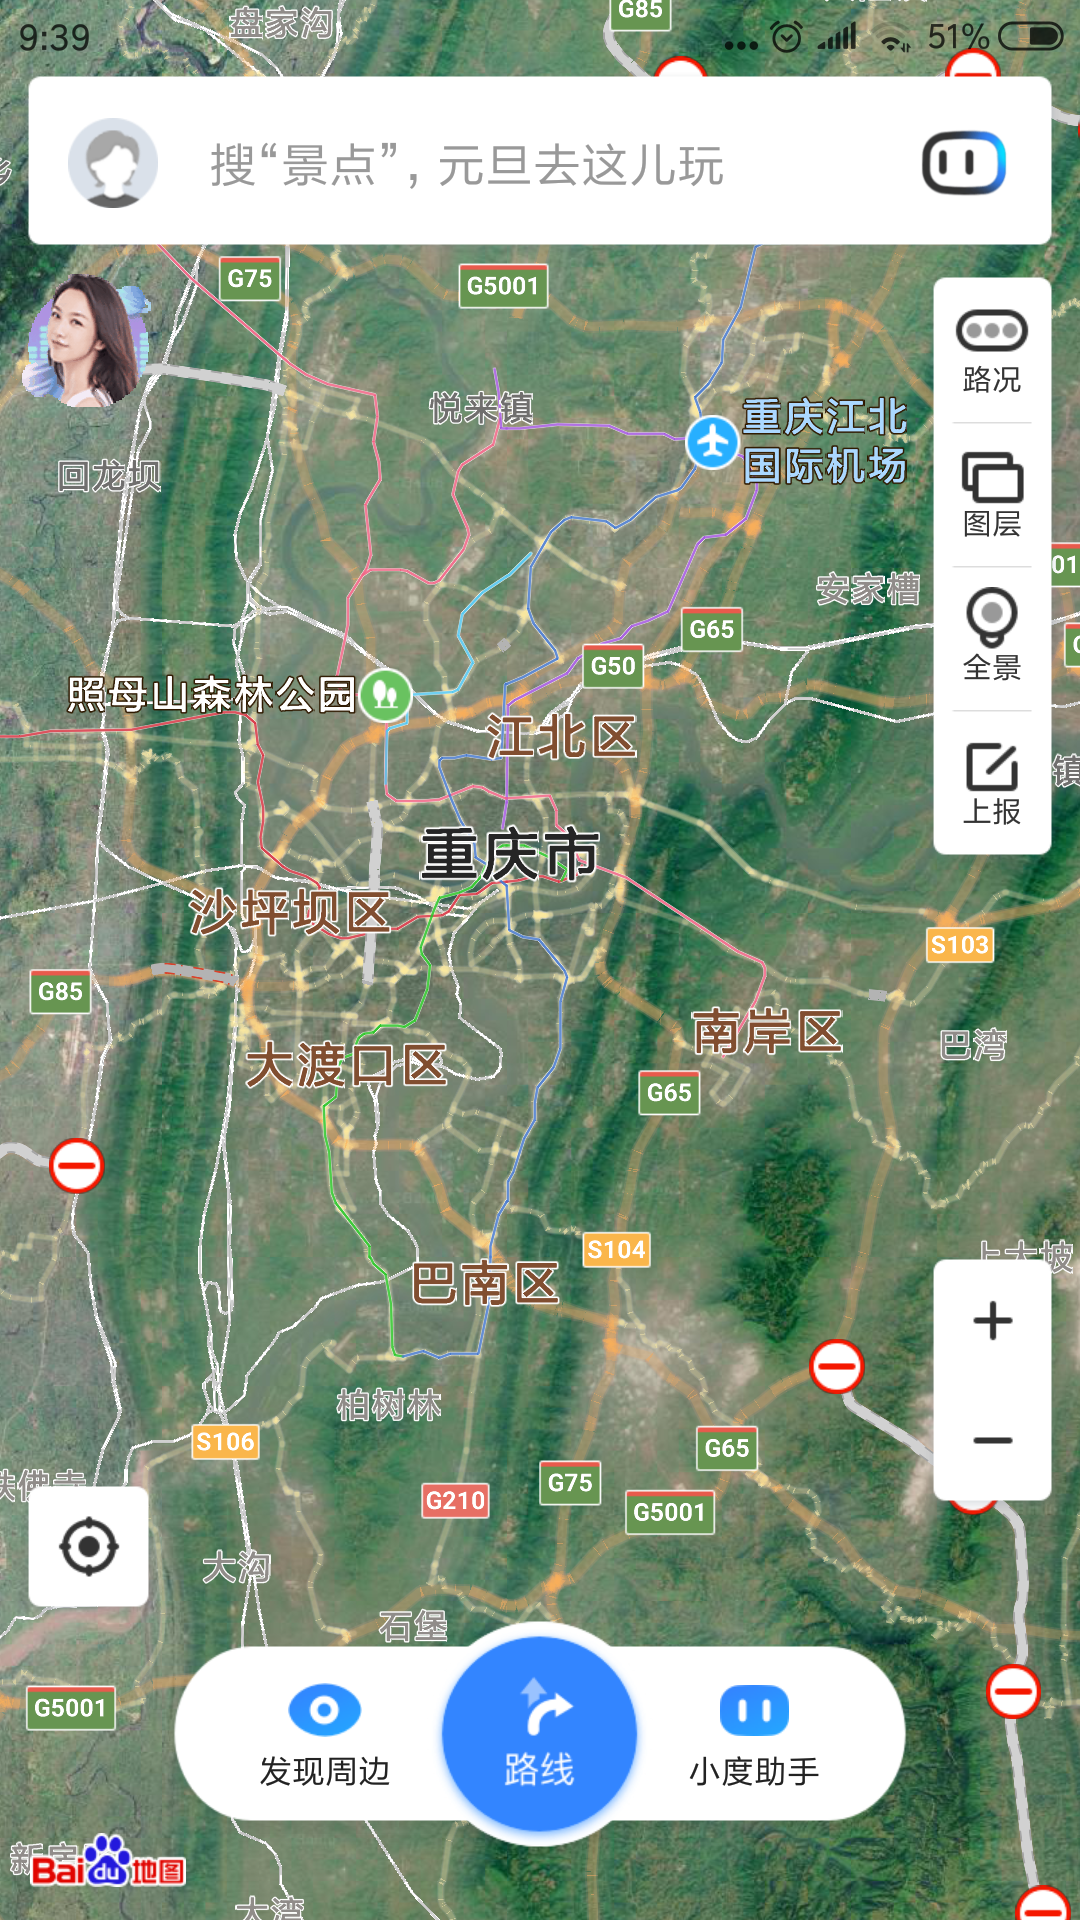 重庆江北机场地图位置图片